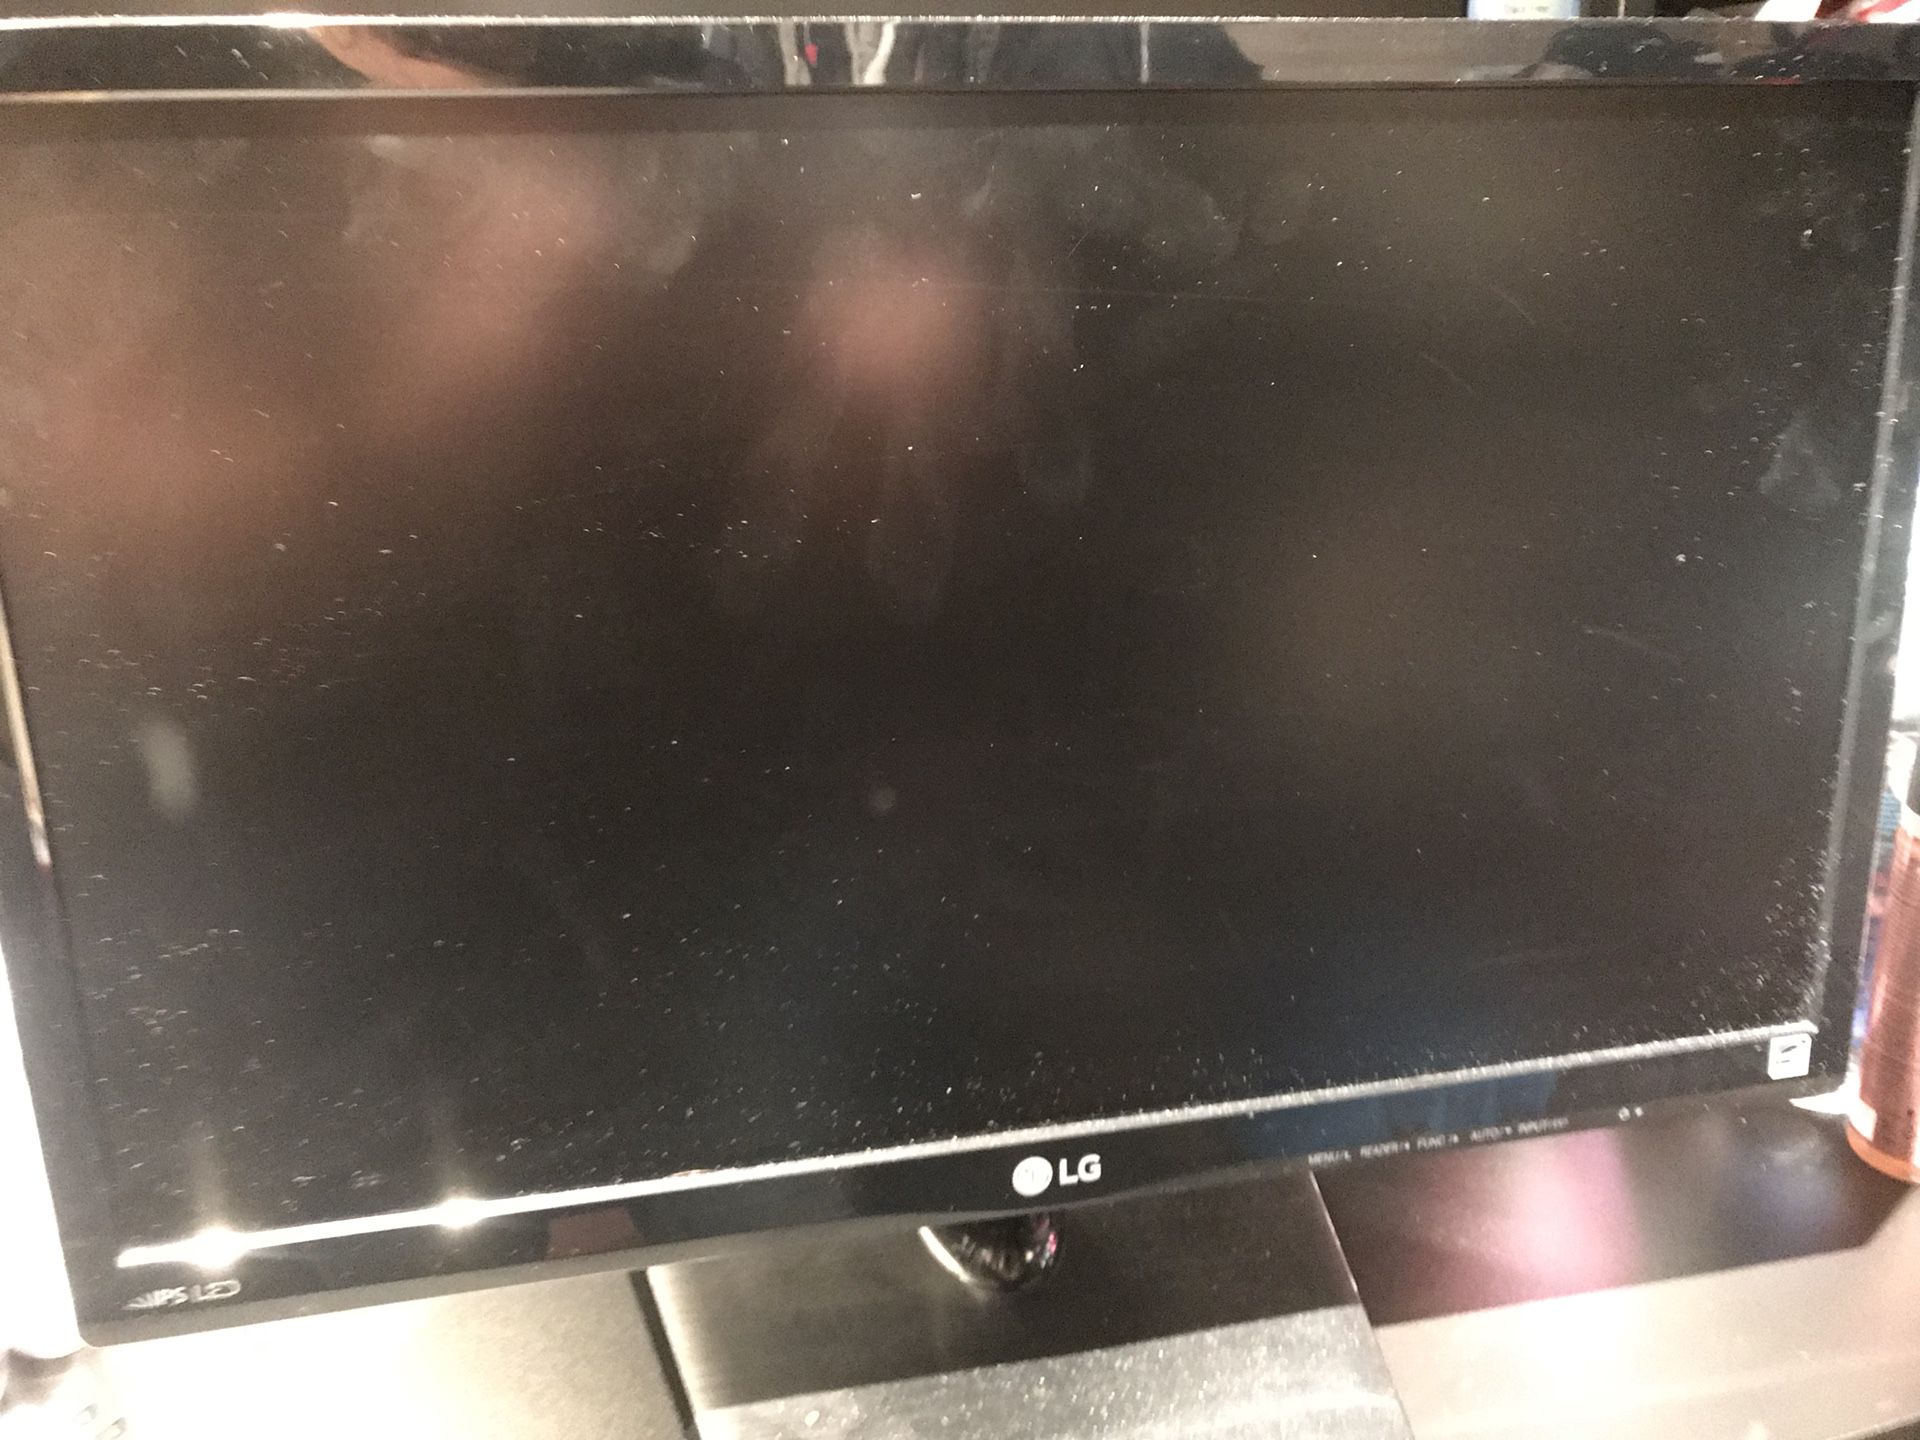 LG computer monitor